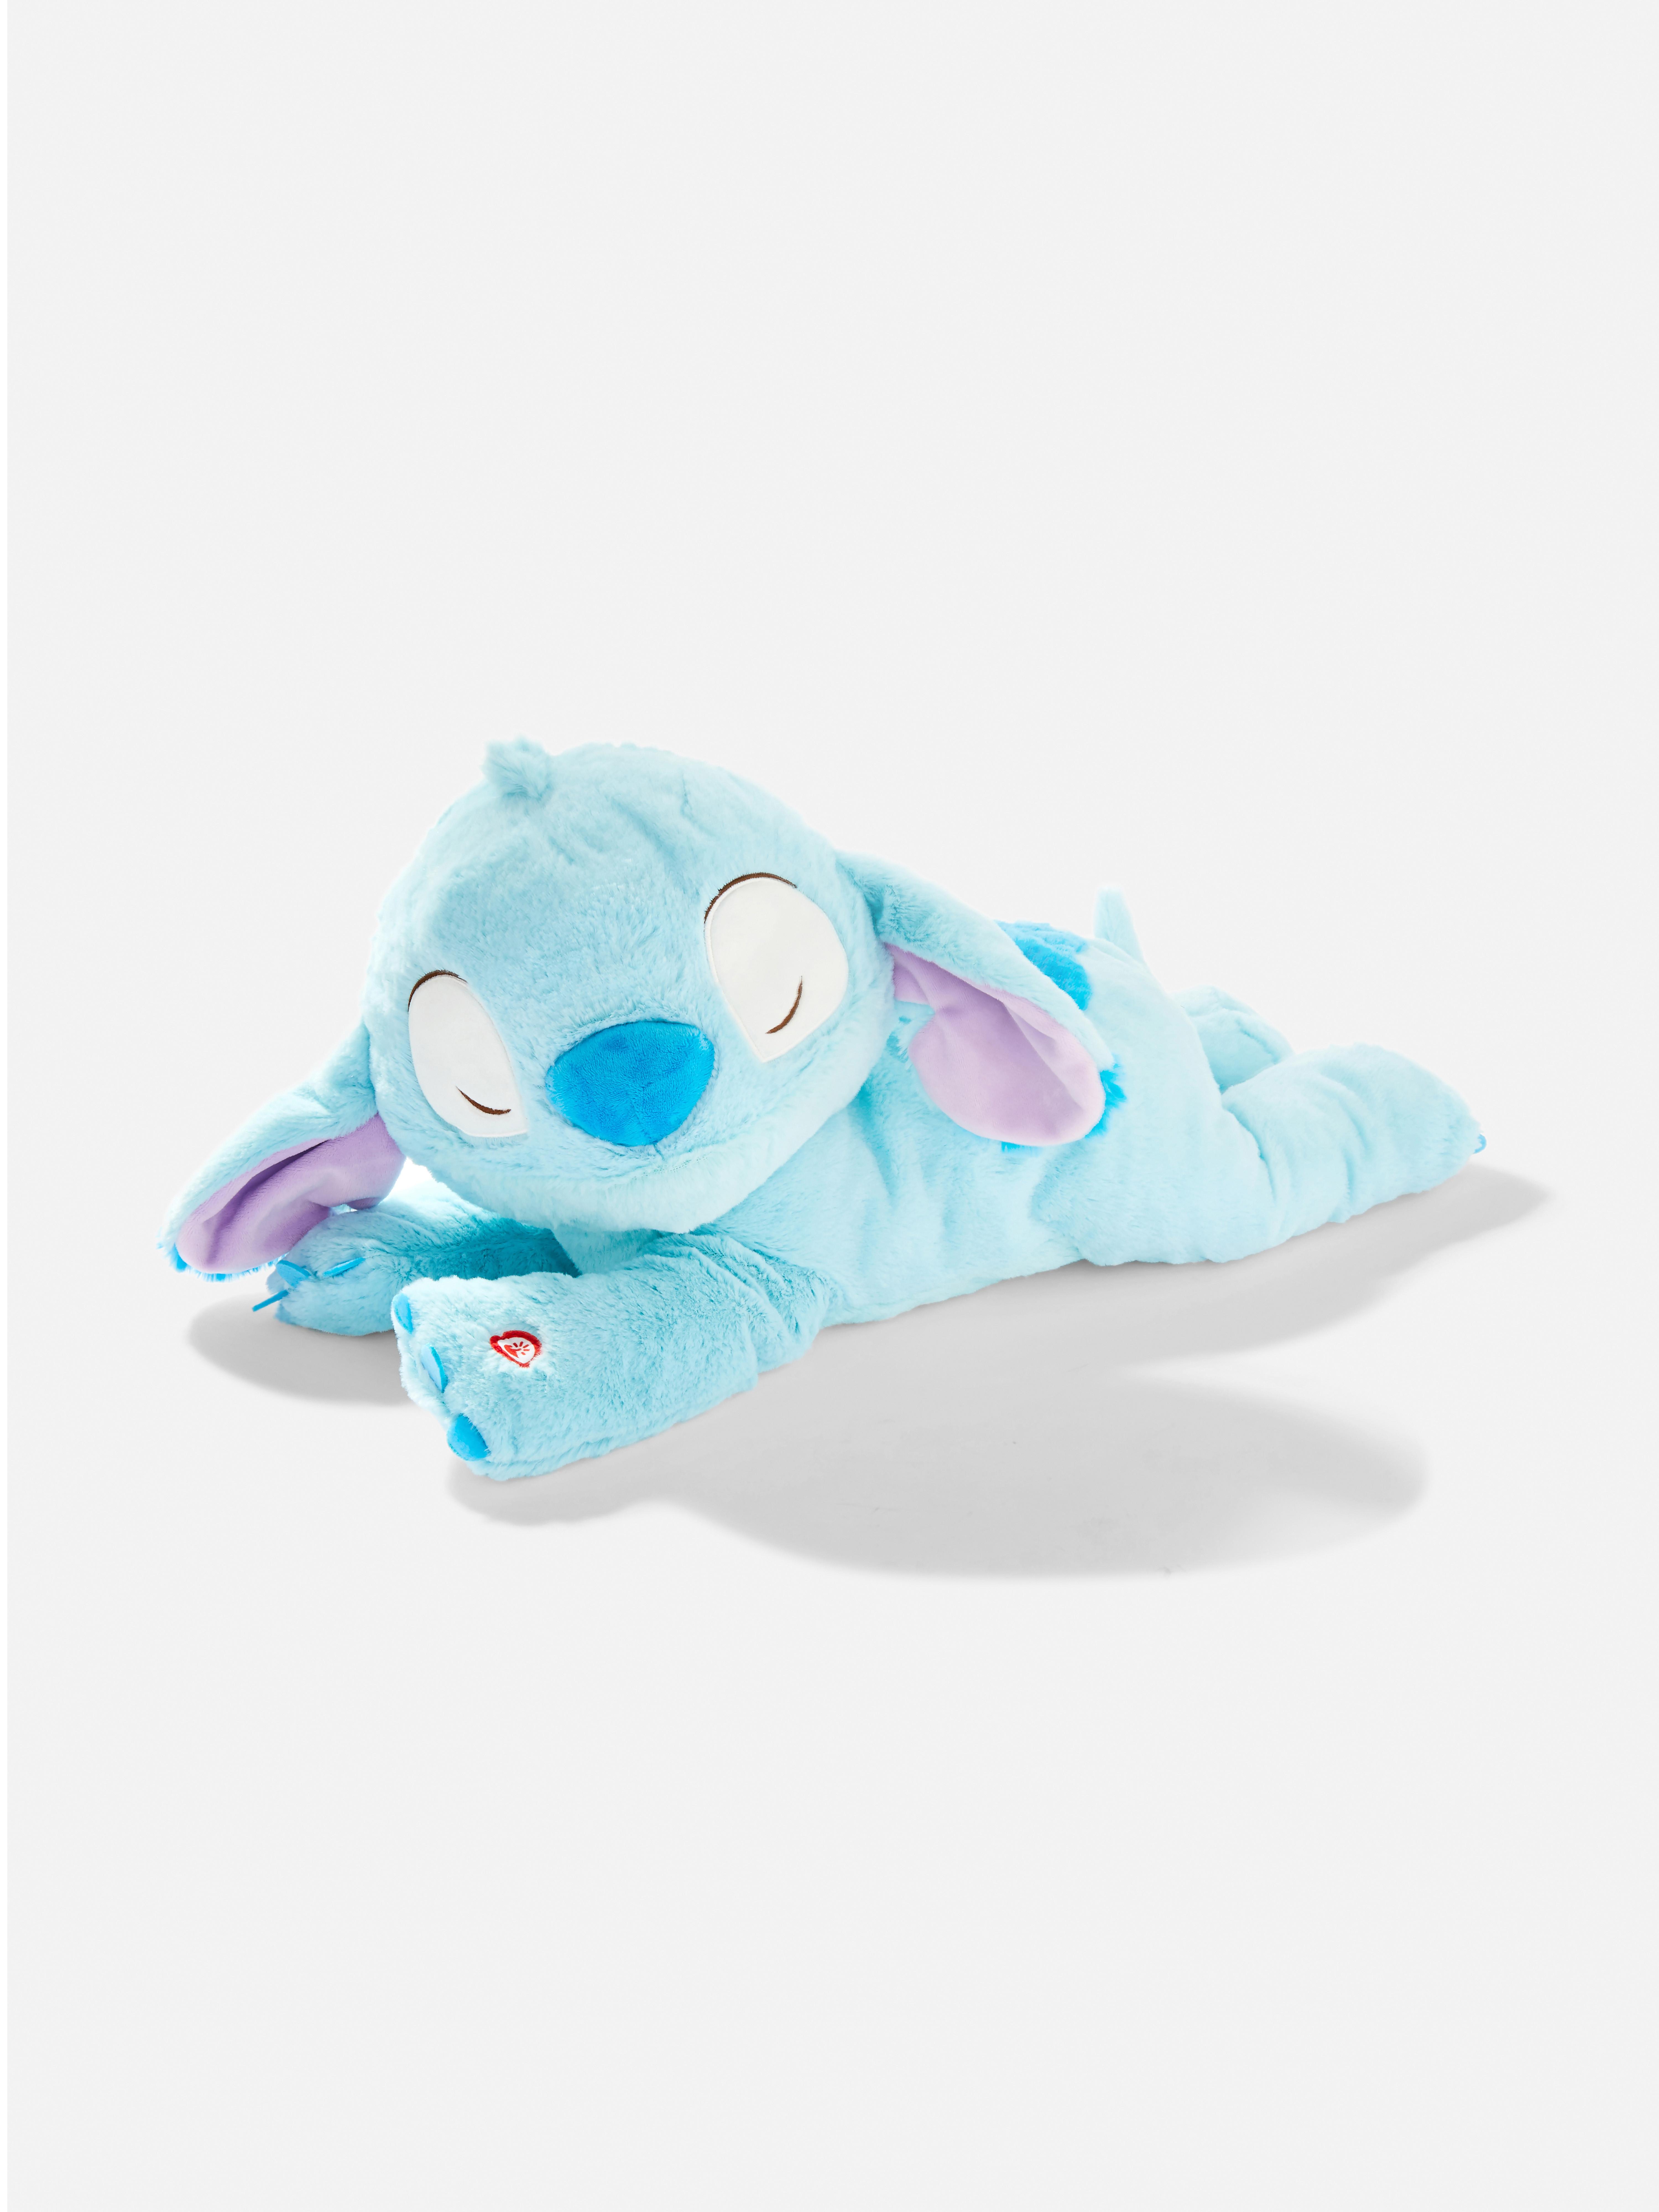 Disney’s Lilo & Stitch Sleeping Stitch Plush Toy Blue